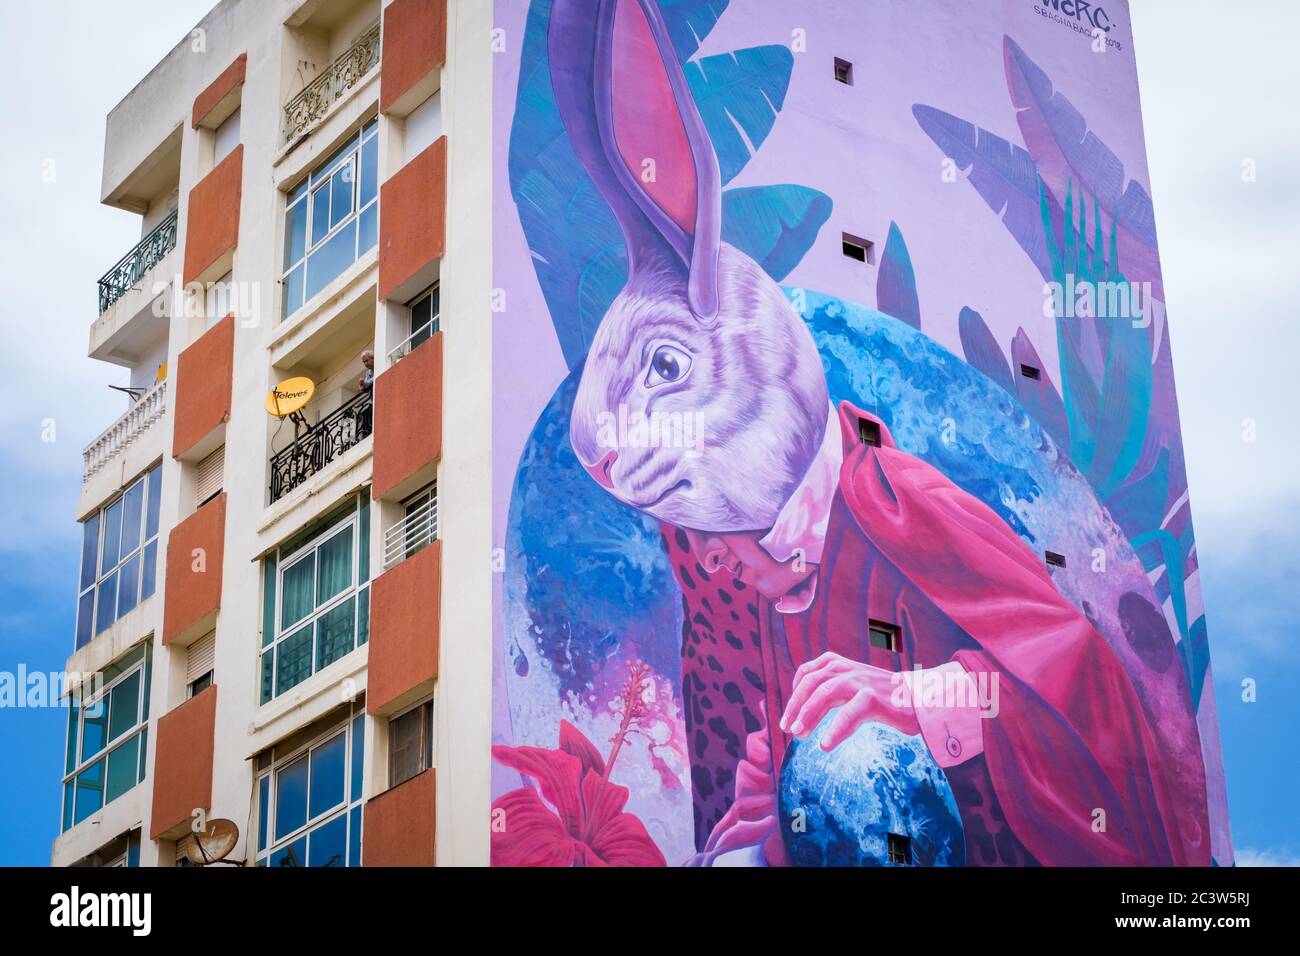 Maroc, Casablanca: Bâtiments et murale dans le boulevard Zerktouni. Murale représentant un lapin géant, oeuvre de l'artiste mexicain WERC Banque D'Images